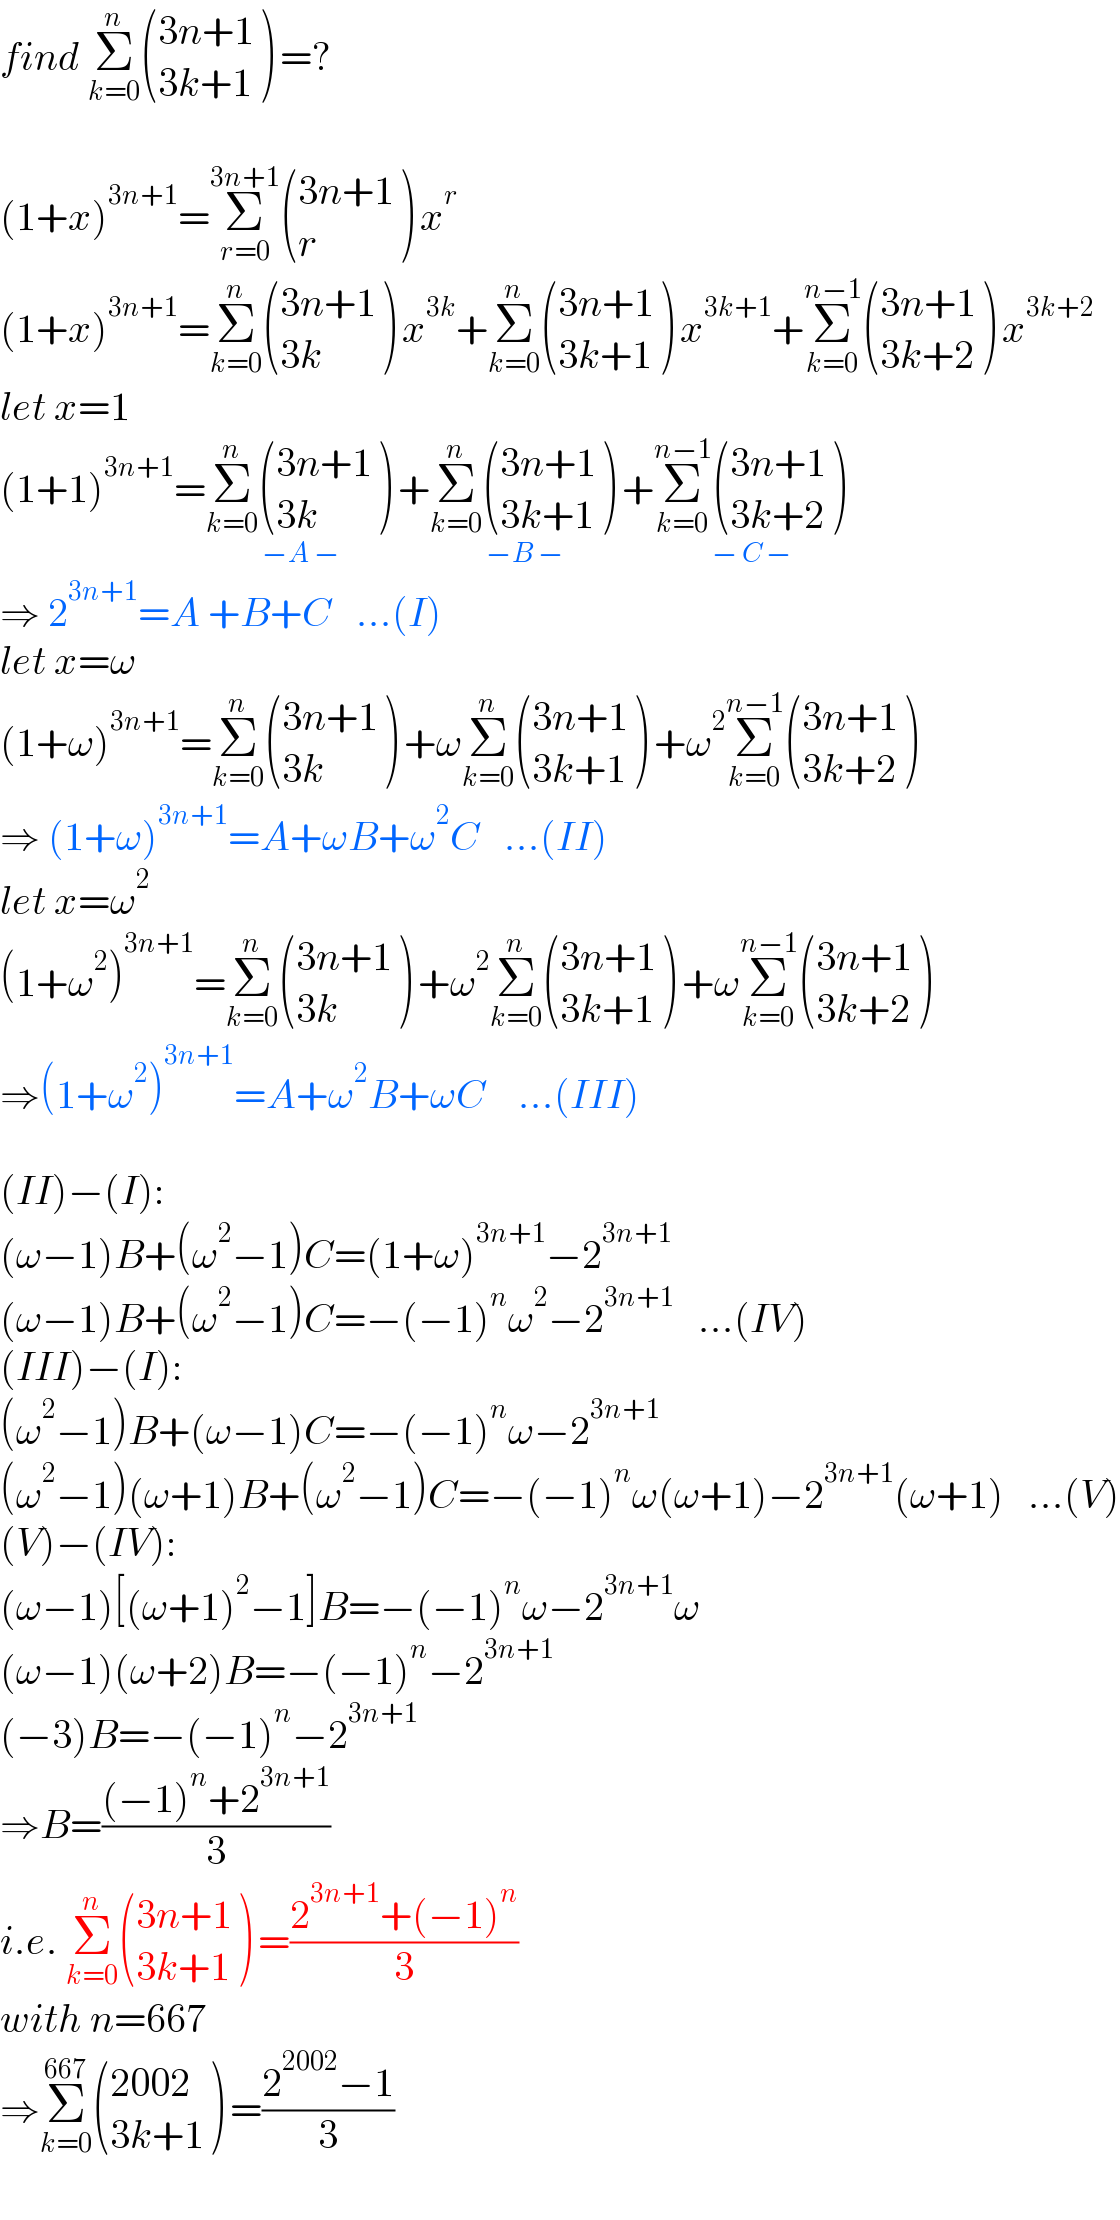 find Σ_(k=0) ^n  (((3n+1)),((3k+1)) ) =?    (1+x)^(3n+1) =Σ_(r=0) ^(3n+1)  (((3n+1)),(r) ) x^r   (1+x)^(3n+1) =Σ_(k=0) ^n  (((3n+1)),((3k)) ) x^(3k) +Σ_(k=0) ^n  (((3n+1)),((3k+1)) ) x^(3k+1) +Σ_(k=0) ^(n−1)  (((3n+1)),((3k+2)) ) x^(3k+2)   let x=1  (1+1)^(3n+1) =Σ_(k=0) ^n  (((3n+1)),((3k)) ) _(−A −) +Σ_(k=0) ^n  (((3n+1)),((3k+1)) ) _(−B −) +Σ_(k=0) ^(n−1)  (((3n+1)),((3k+2)) ) _(− C −)   ⇒ 2^(3n+1) =A +B+C   ...(I)  let x=ω  (1+ω)^(3n+1) =Σ_(k=0) ^n  (((3n+1)),((3k)) ) +ωΣ_(k=0) ^n  (((3n+1)),((3k+1)) ) +ω^2 Σ_(k=0) ^(n−1)  (((3n+1)),((3k+2)) )   ⇒ (1+ω)^(3n+1) =A+ωB+ω^2 C   ...(II)  let x=ω^2   (1+ω^2 )^(3n+1) =Σ_(k=0) ^n  (((3n+1)),((3k)) ) +ω^2 Σ_(k=0) ^n  (((3n+1)),((3k+1)) ) +ωΣ_(k=0) ^(n−1)  (((3n+1)),((3k+2)) )   ⇒(1+ω^2 )^(3n+1) =A+ω^2 B+ωC    ...(III)    (II)−(I):  (ω−1)B+(ω^2 −1)C=(1+ω)^(3n+1) −2^(3n+1)   (ω−1)B+(ω^2 −1)C=−(−1)^n ω^2 −2^(3n+1)    ...(IV)  (III)−(I):  (ω^2 −1)B+(ω−1)C=−(−1)^n ω−2^(3n+1)   (ω^2 −1)(ω+1)B+(ω^2 −1)C=−(−1)^n ω(ω+1)−2^(3n+1) (ω+1)   ...(V)  (V)−(IV):  (ω−1)[(ω+1)^2 −1]B=−(−1)^n ω−2^(3n+1) ω  (ω−1)(ω+2)B=−(−1)^n −2^(3n+1)   (−3)B=−(−1)^n −2^(3n+1)   ⇒B=(((−1)^n +2^(3n+1) )/3)  i.e. Σ_(k=0) ^n  (((3n+1)),((3k+1)) ) =((2^(3n+1) +(−1)^n )/3)  with n=667  ⇒Σ_(k=0) ^(667)  (((2002)),((3k+1)) ) =((2^(2002) −1)/3)  